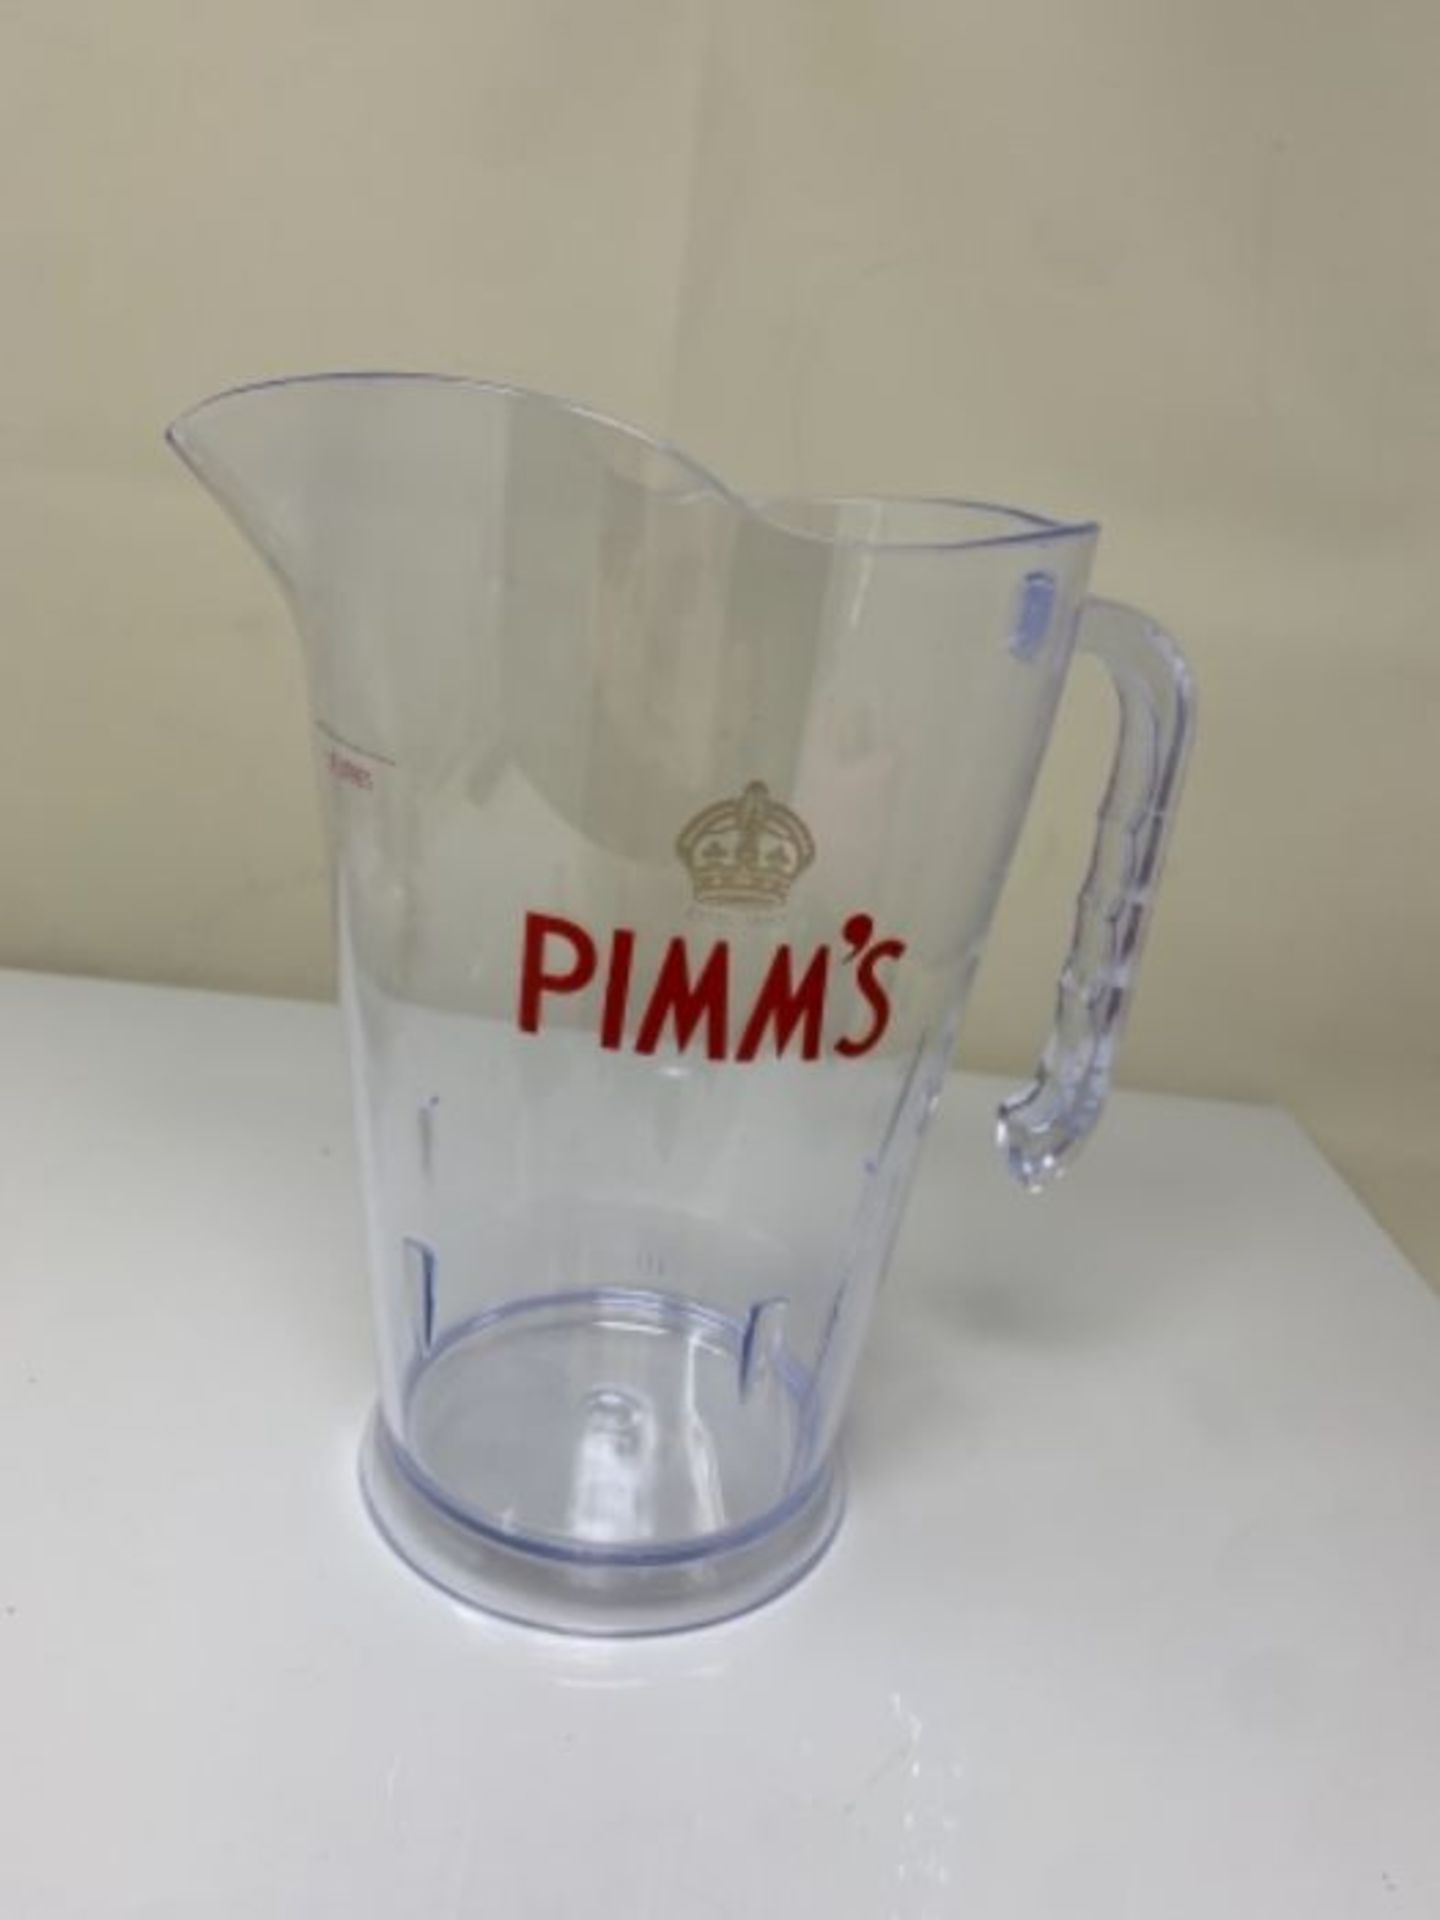 Pimm's Plastic Coctail Jug 1.5 Litre - Image 2 of 2